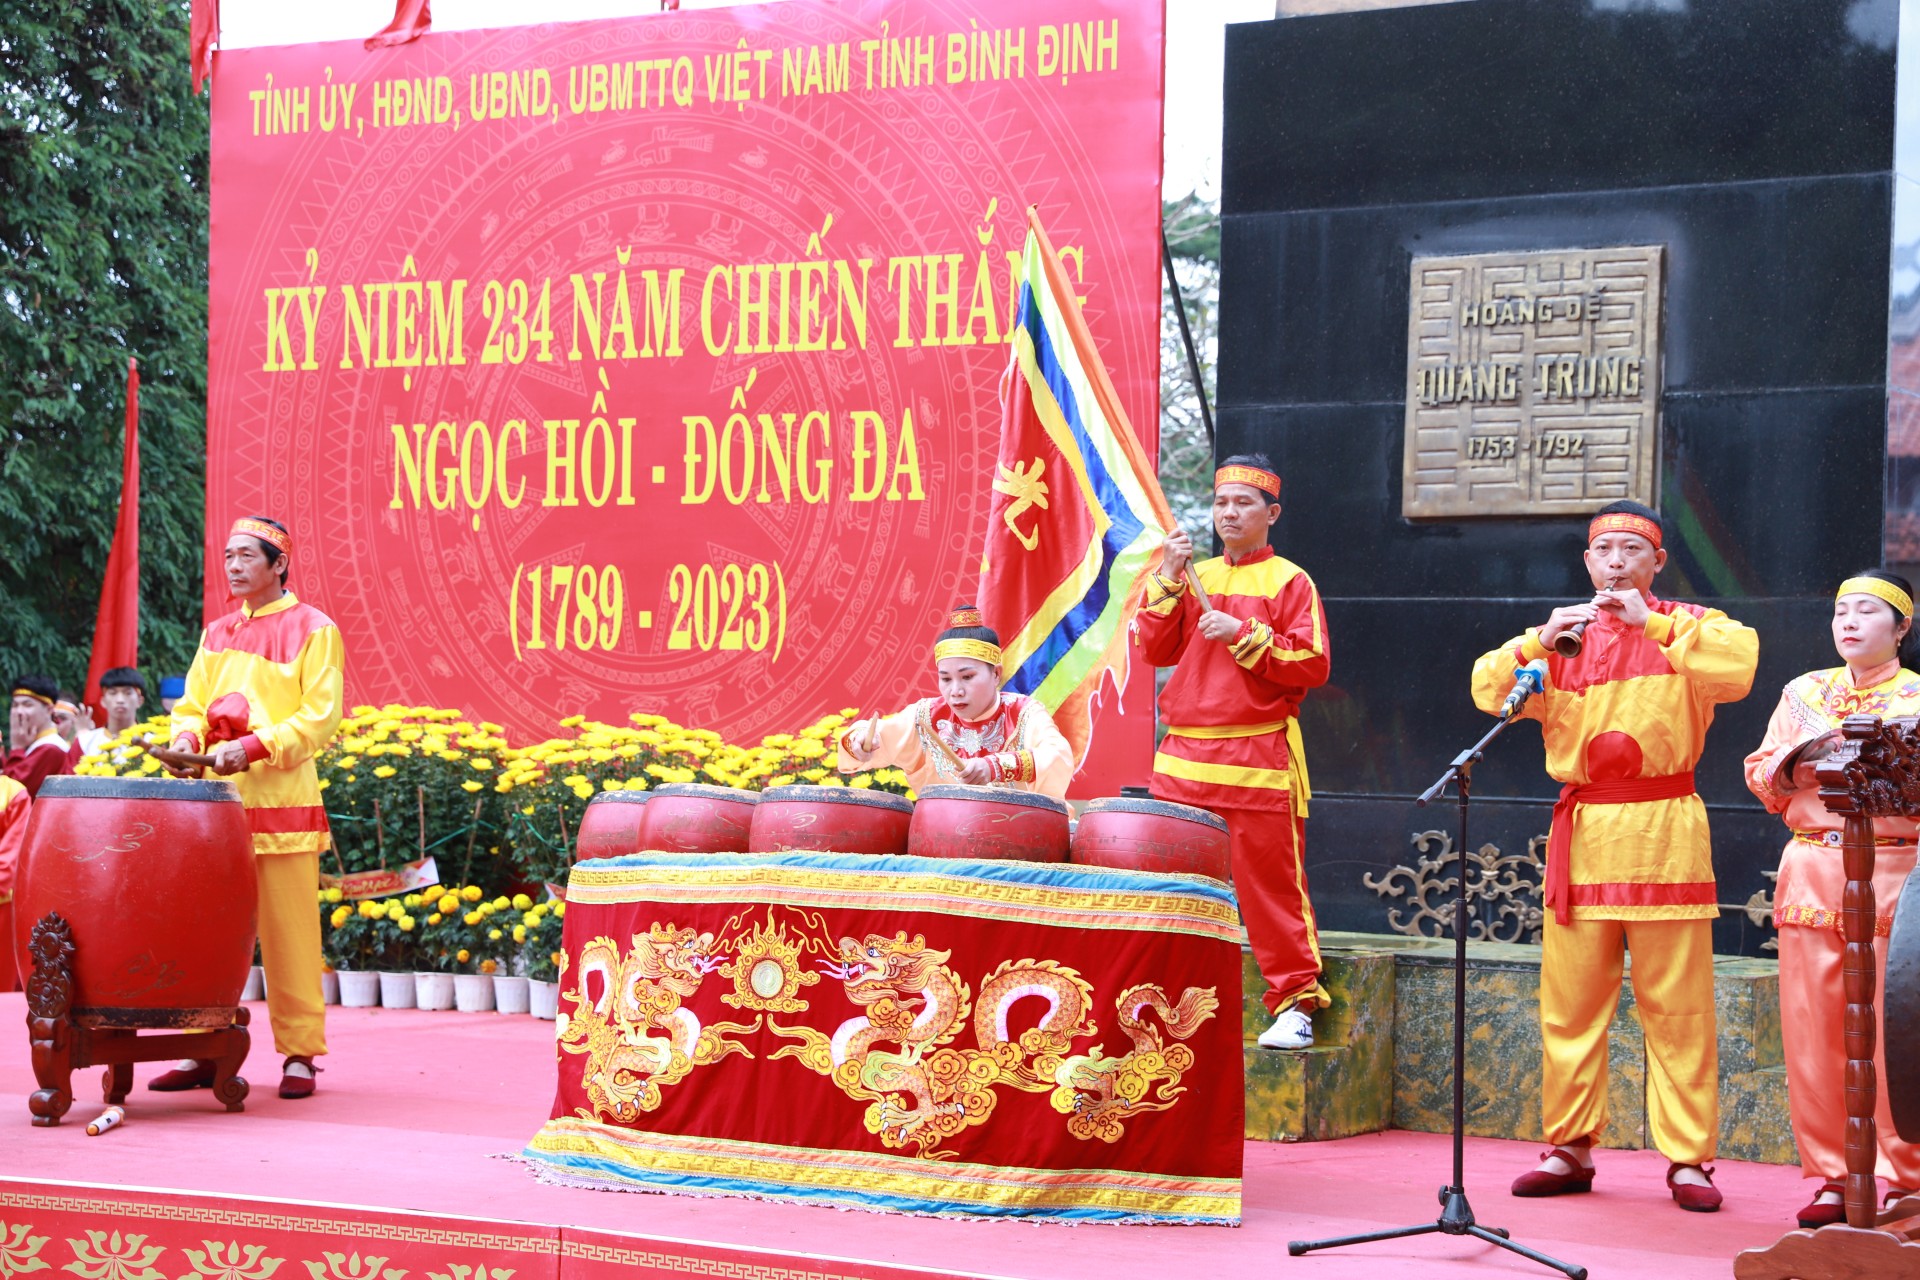 Biển người đổ về lễ hội Ngọc Hồi - Đống Đa ở Bình Định